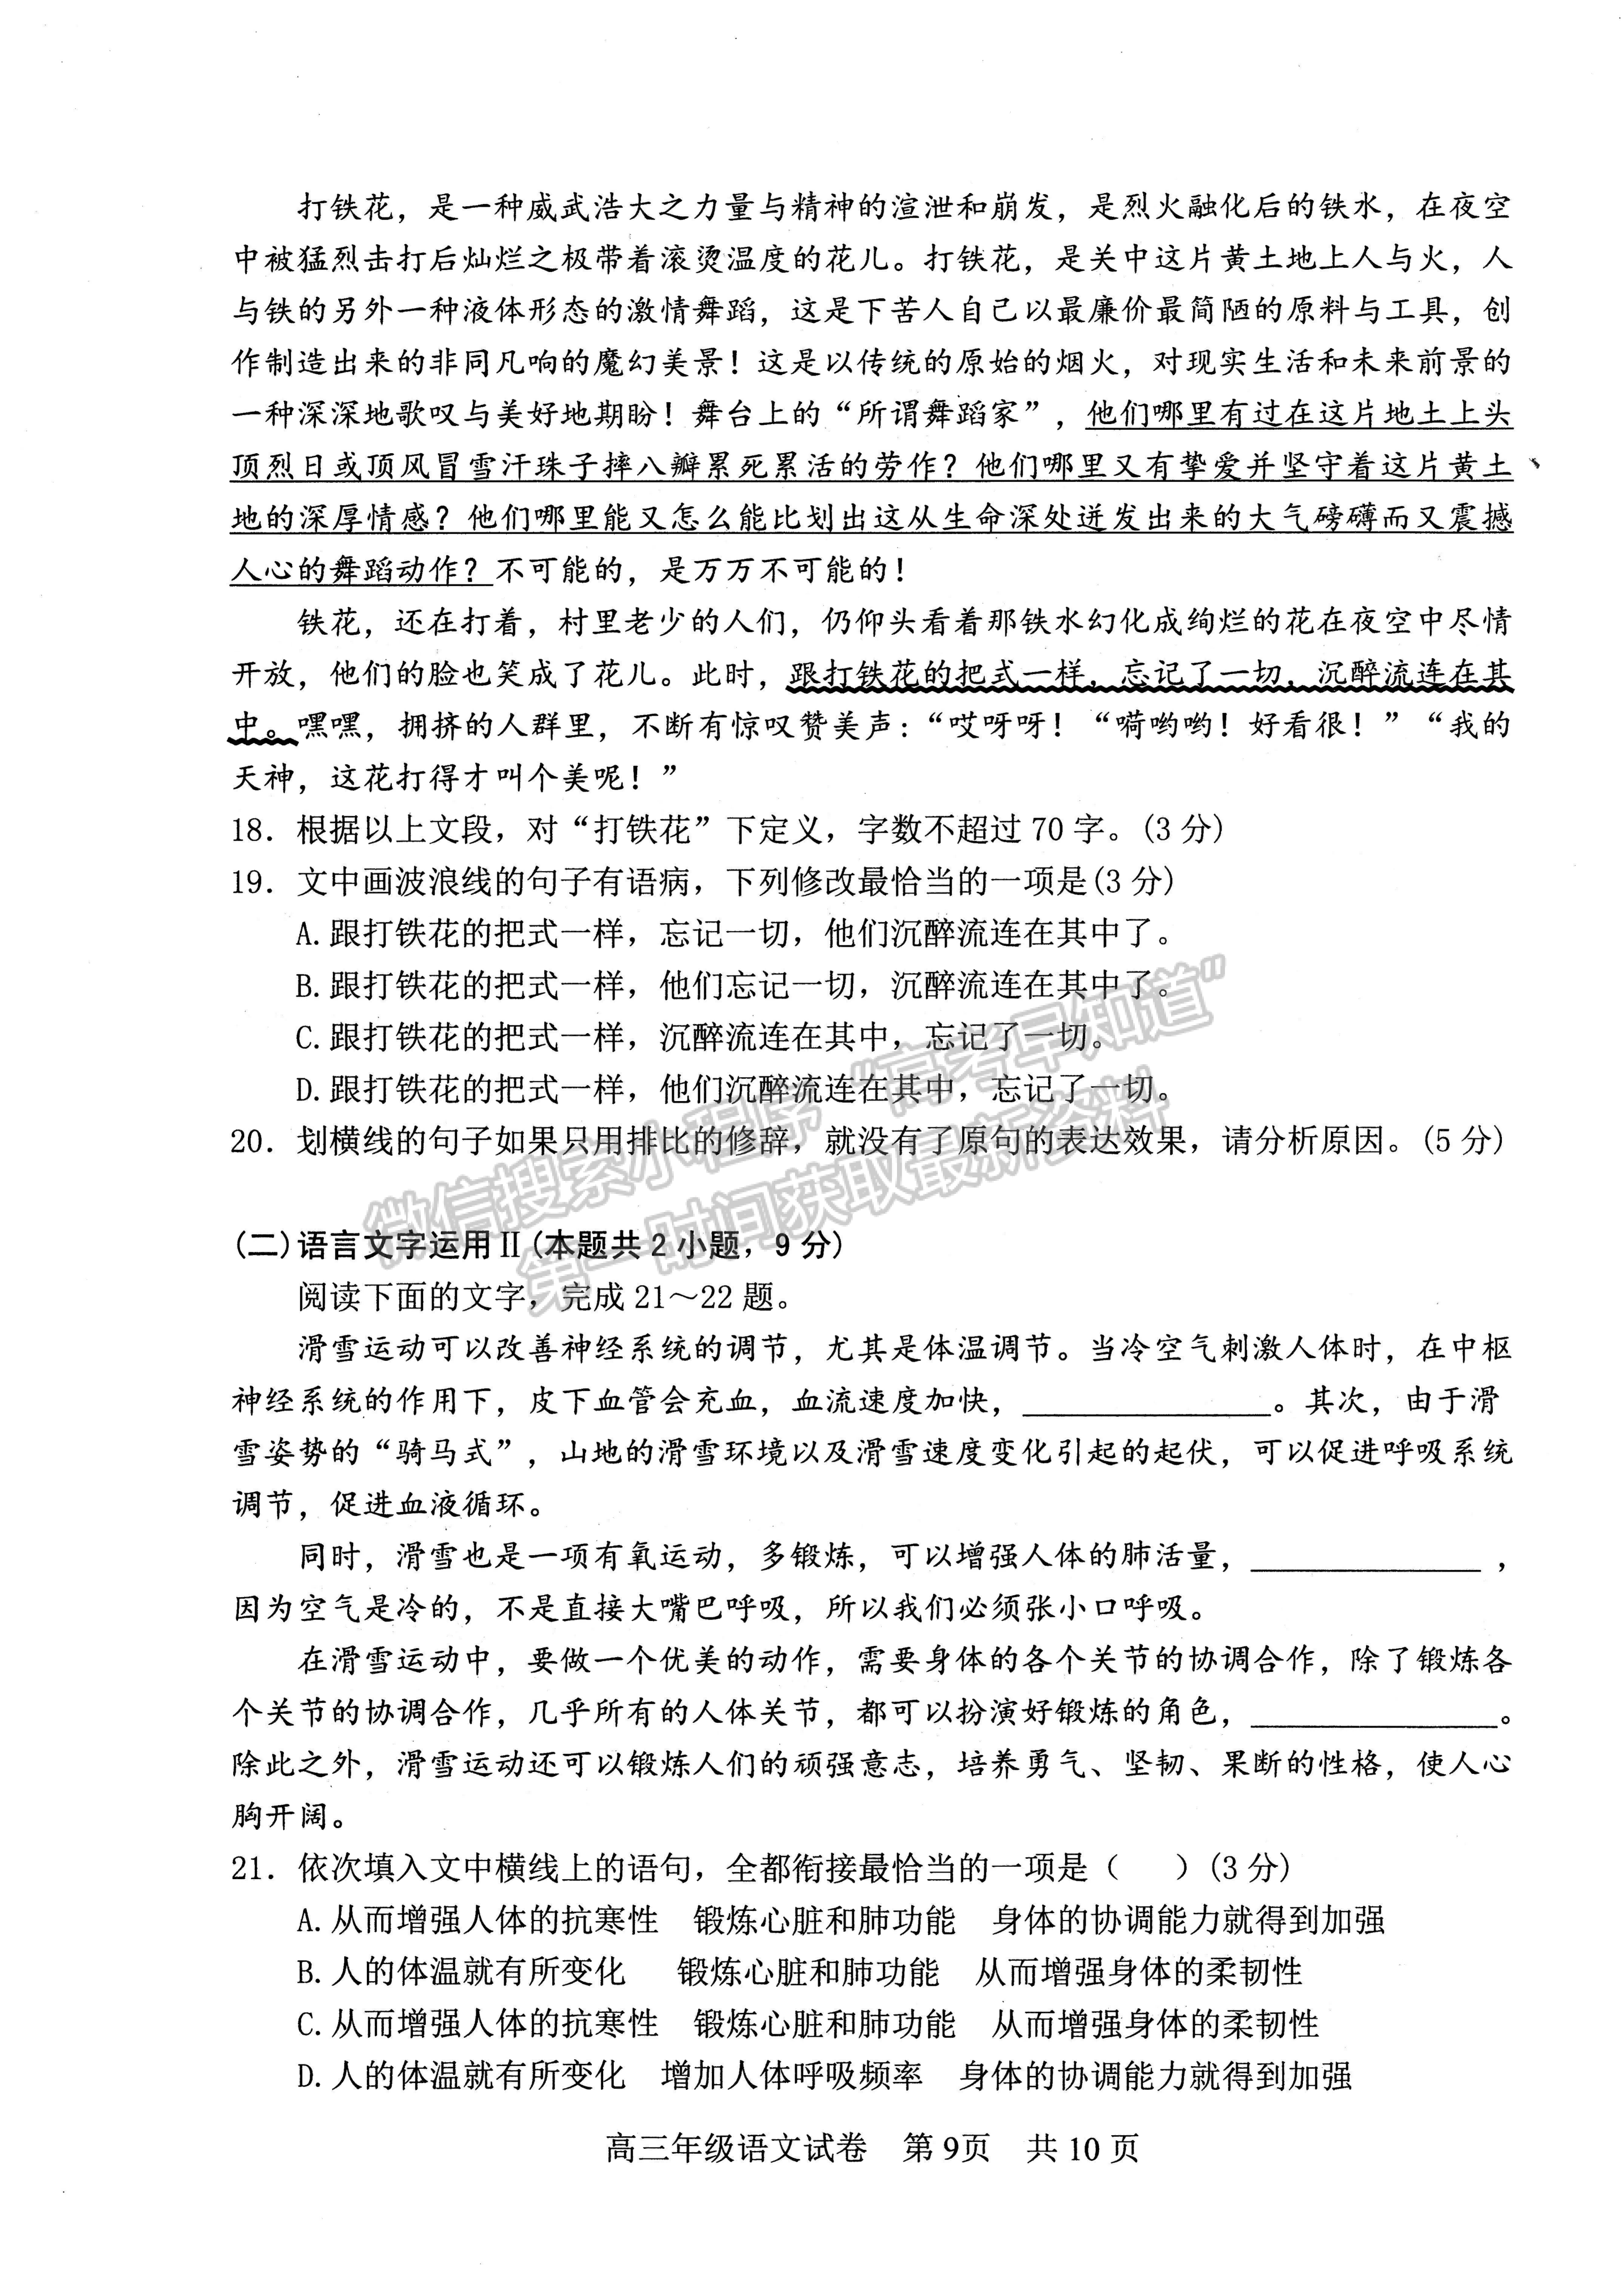 2022湖北武昌区5月质量检测语文试卷及答案